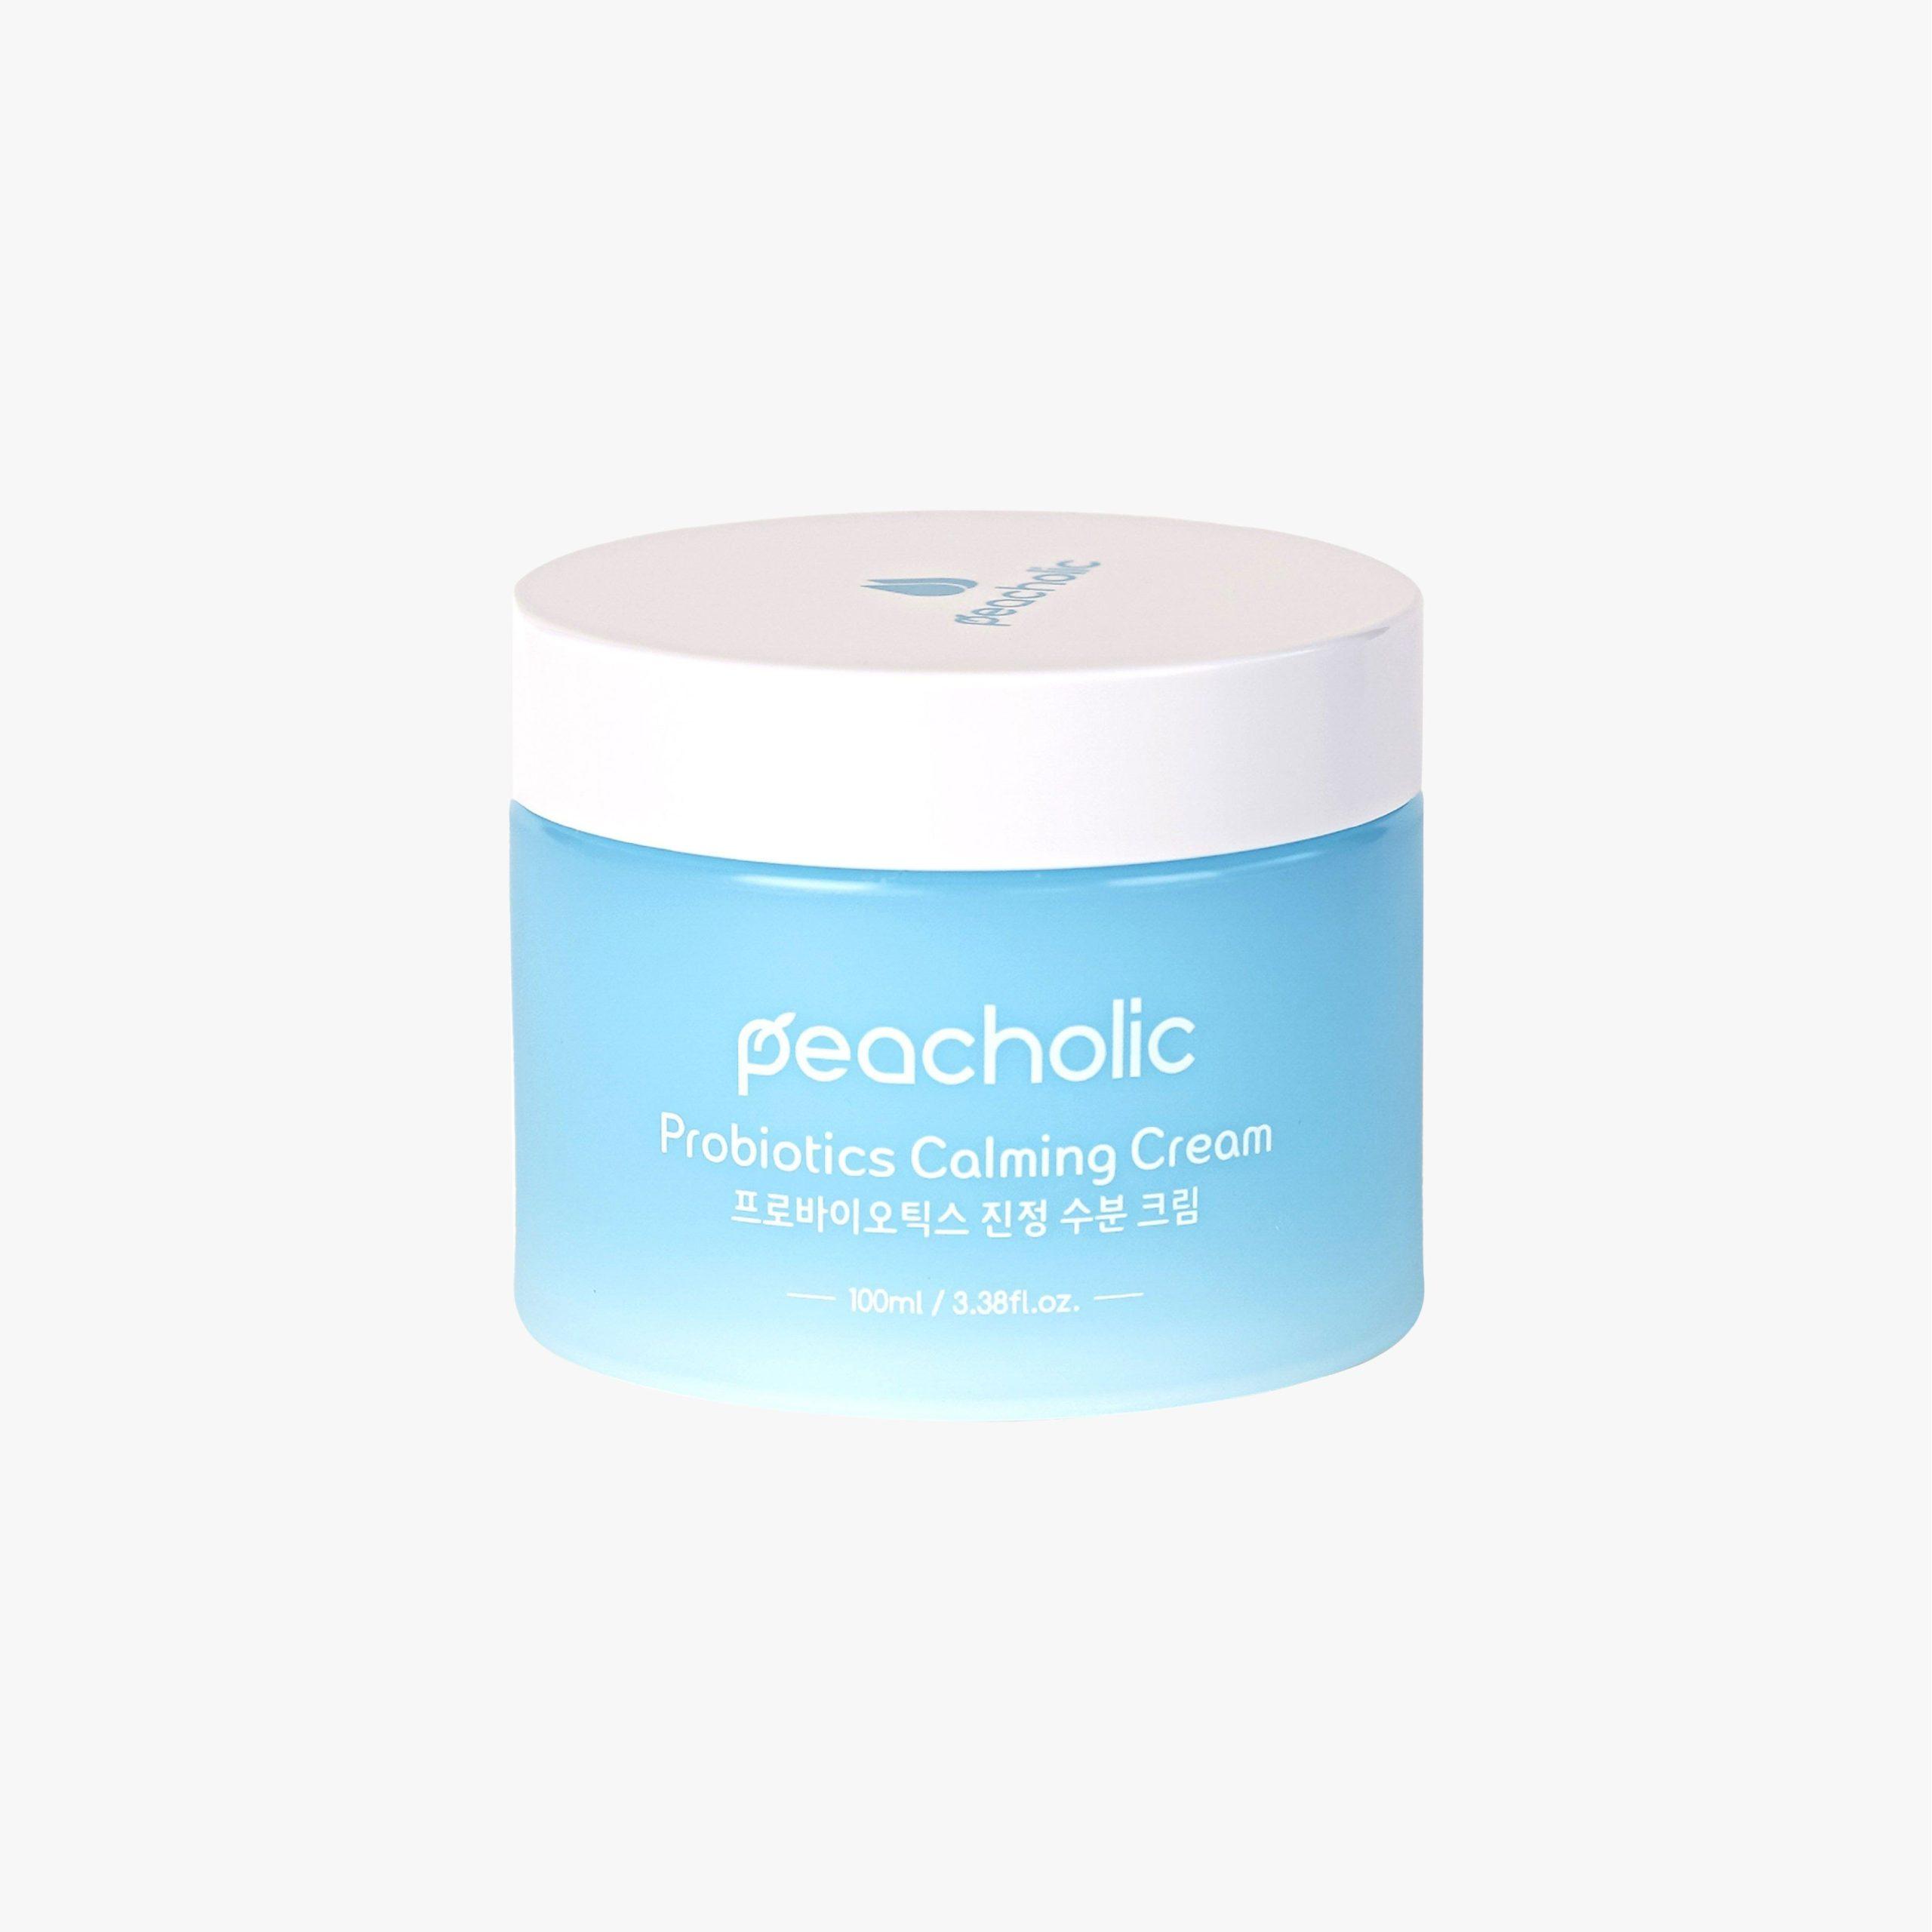 Kem dưỡng ẩm ngải cứu Peacholic Probiotics Calming Cream phù hợp với mọi loại da. Nguồn: Internet